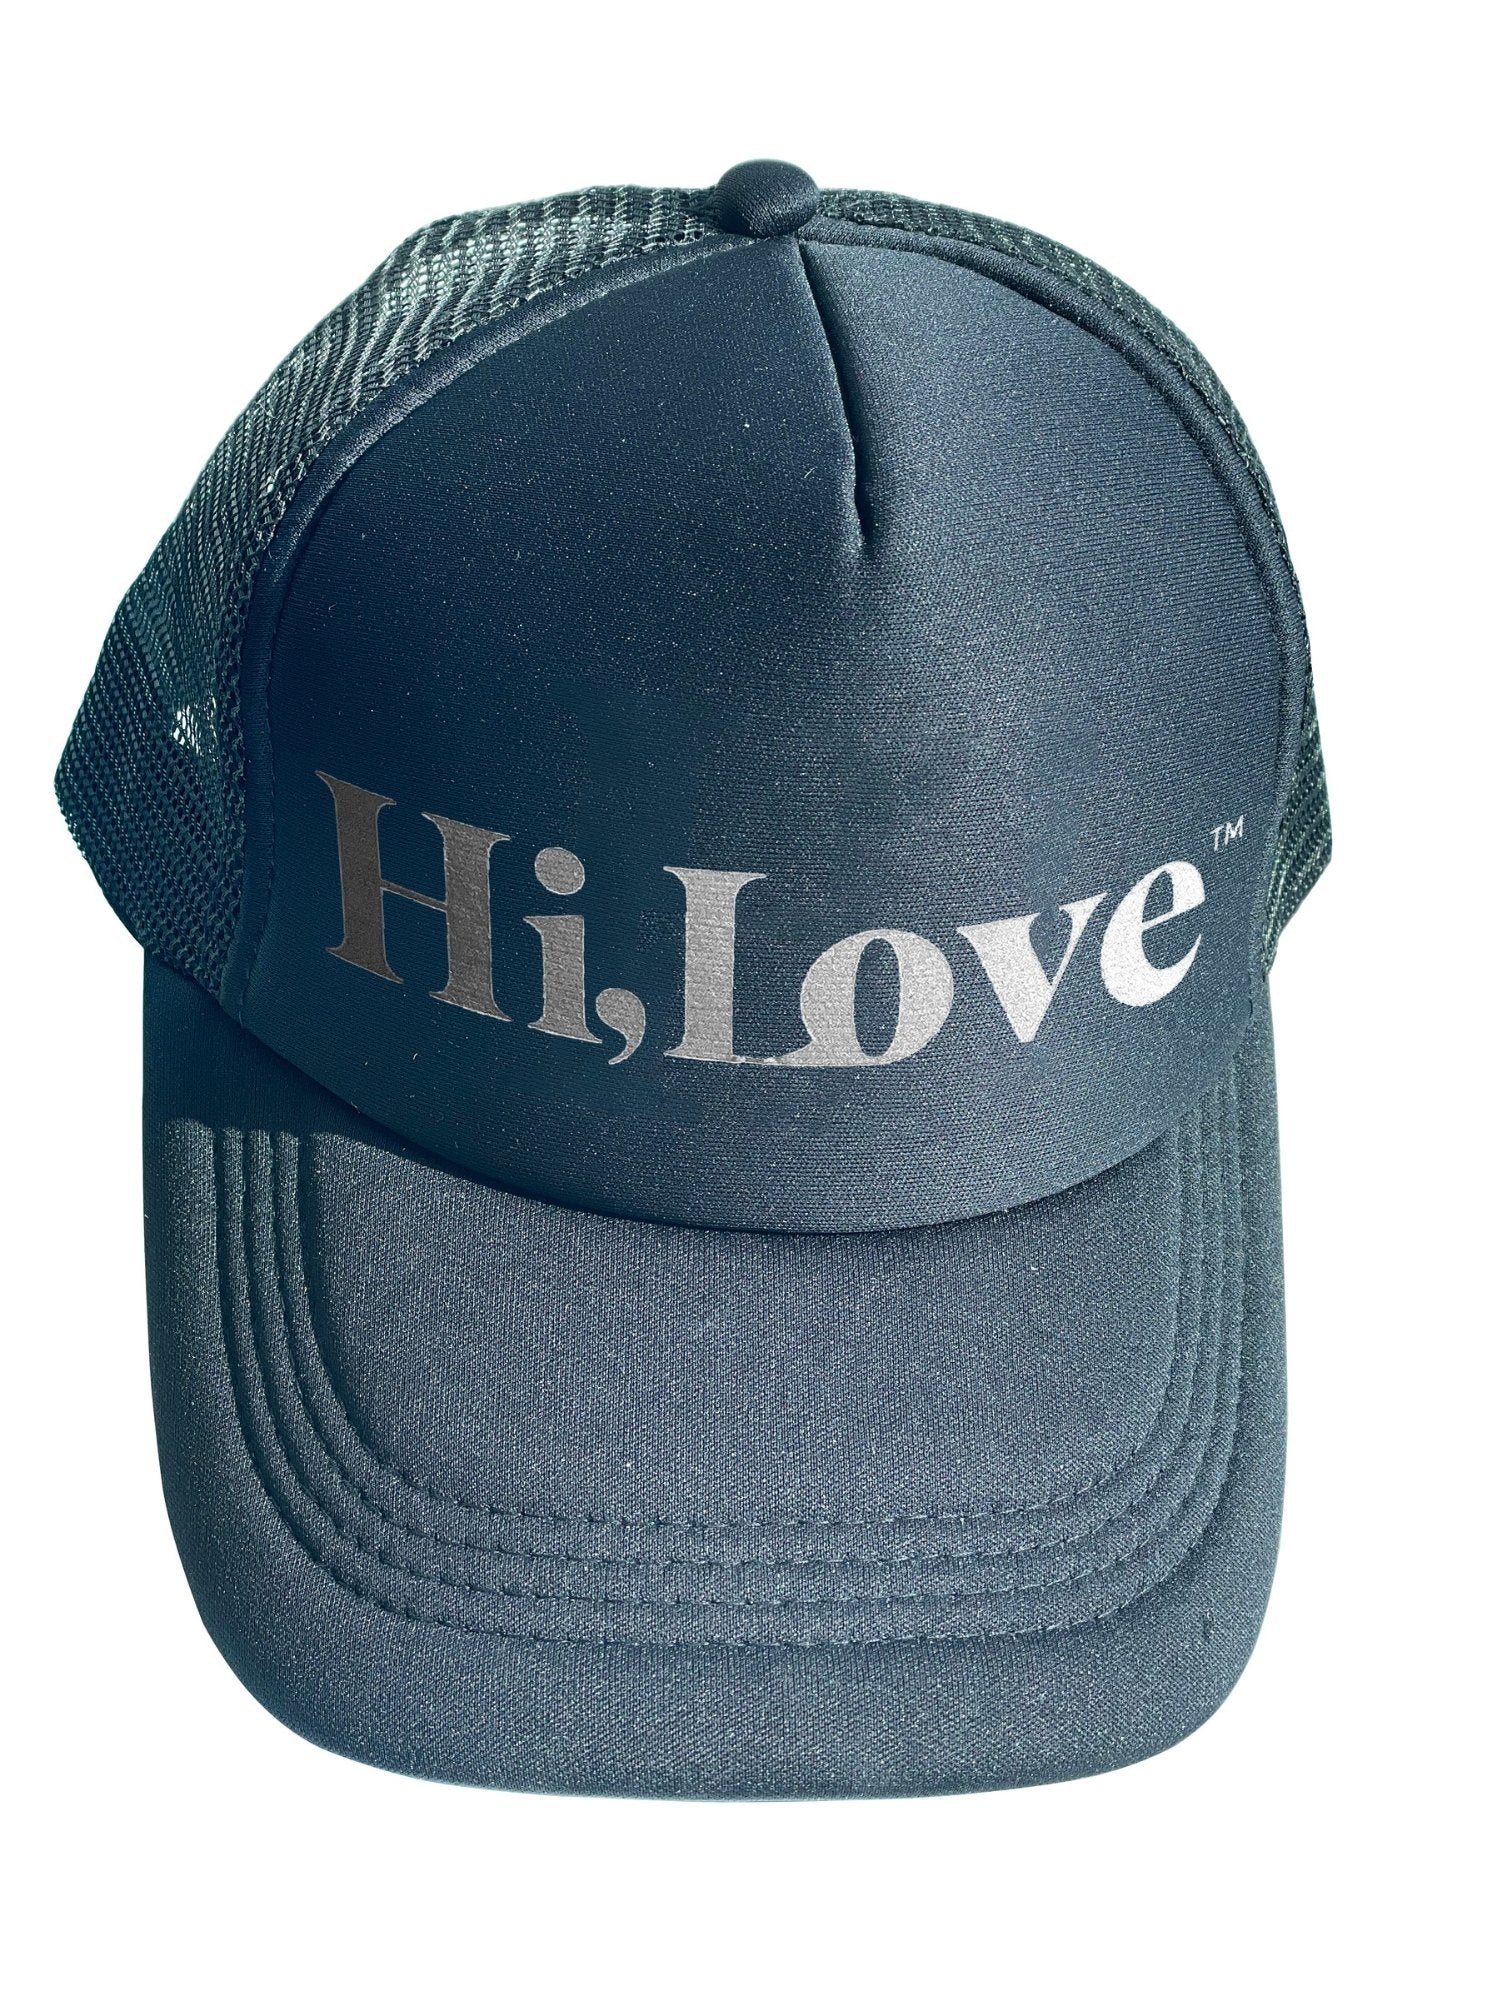 Travel Hat - Black Dahlia Hi Love